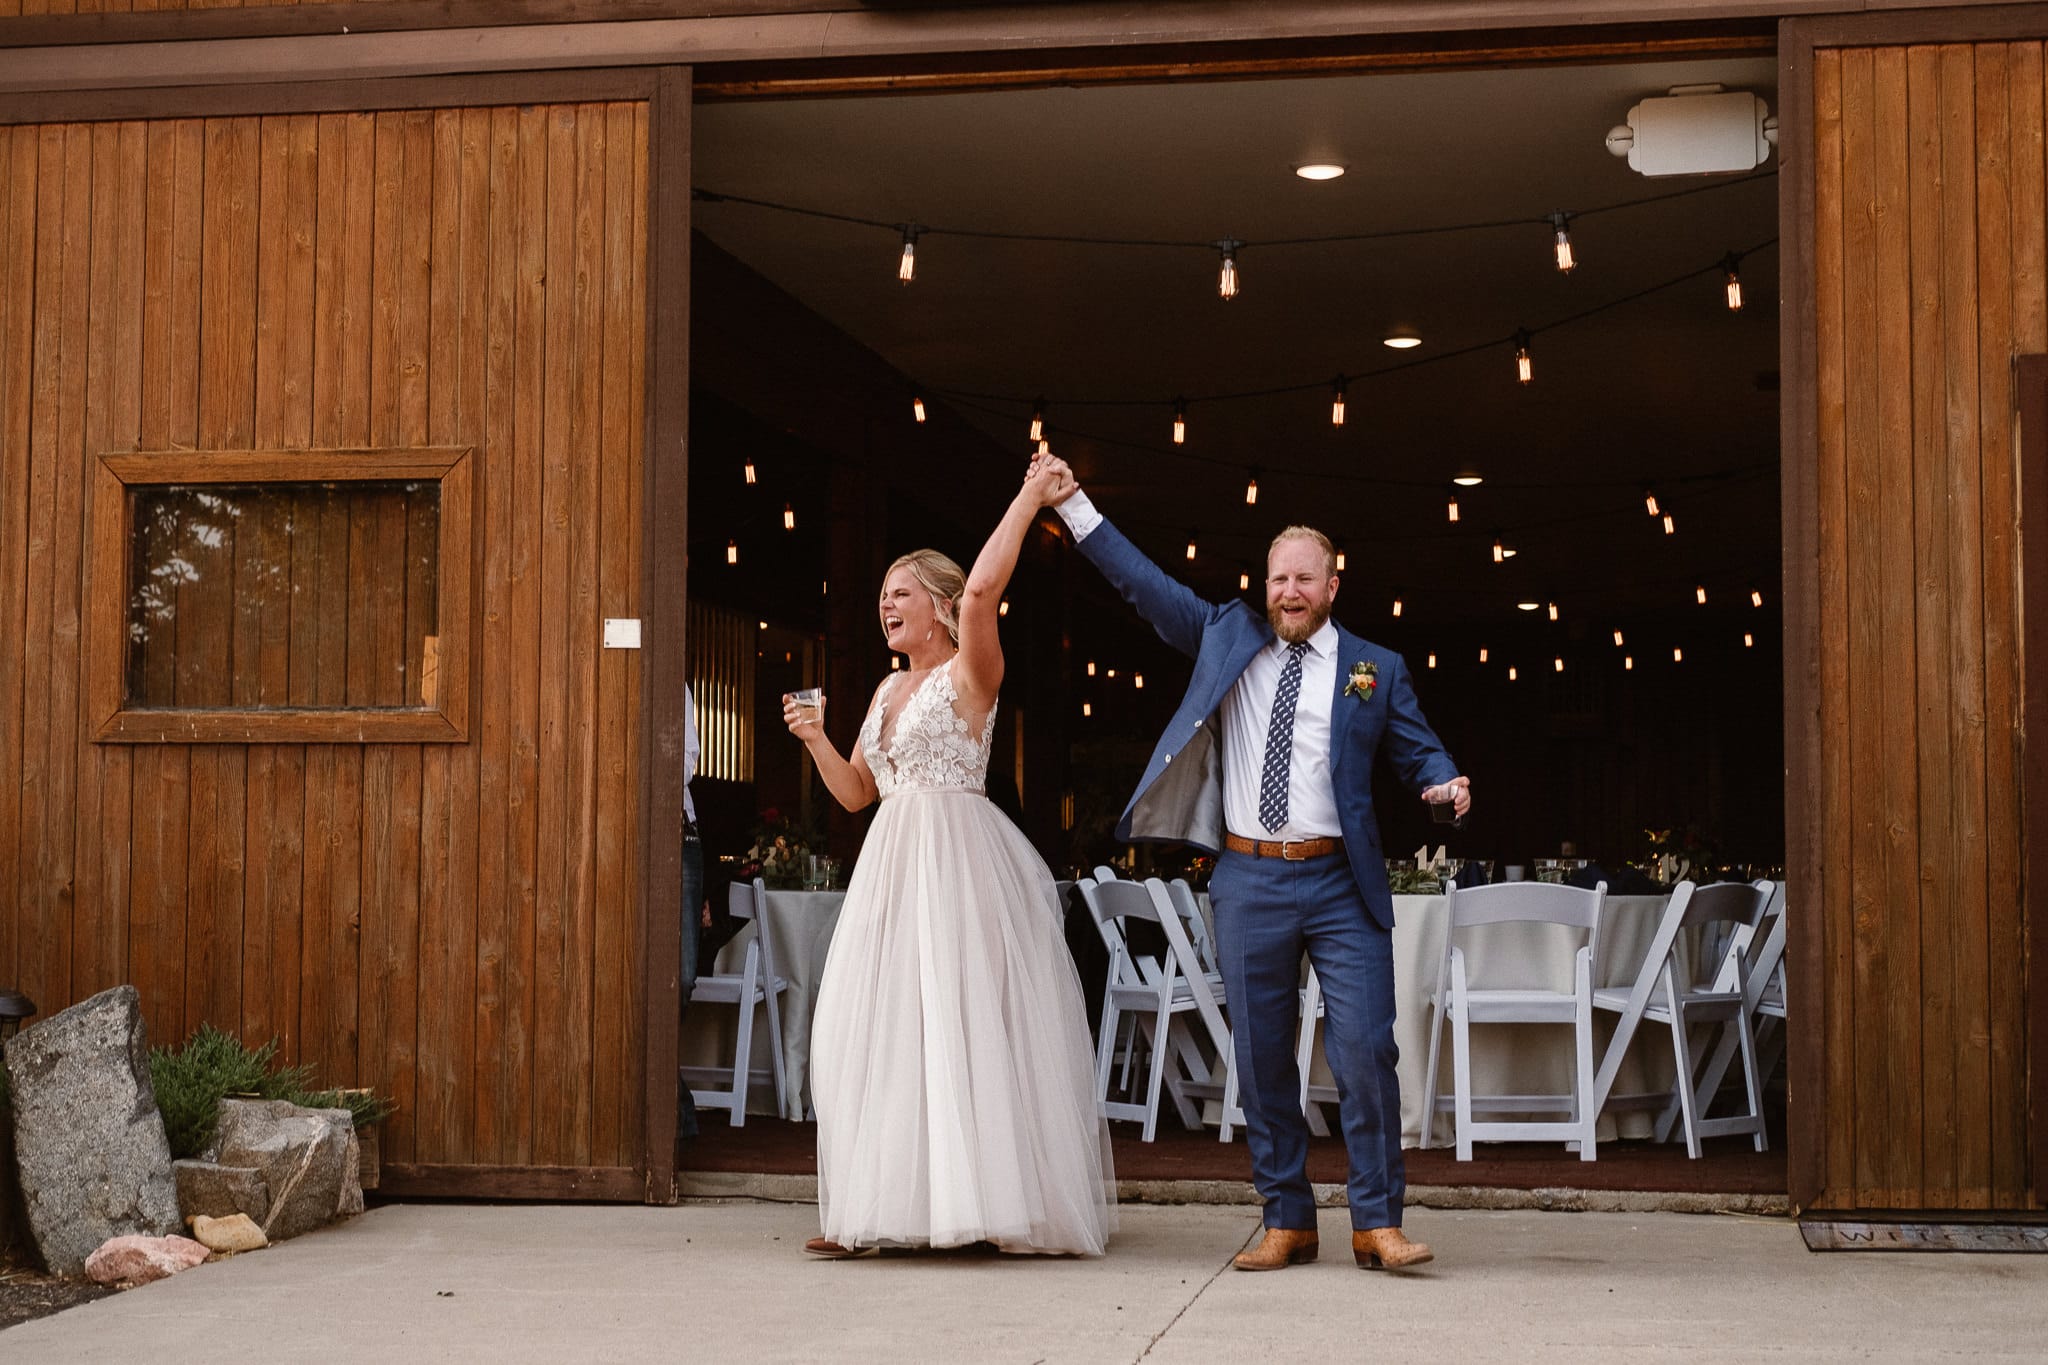 Steamboat Springs wedding photographer, La Joya Dulce wedding, Colorado ranch wedding venues, bride and groom grand entrance